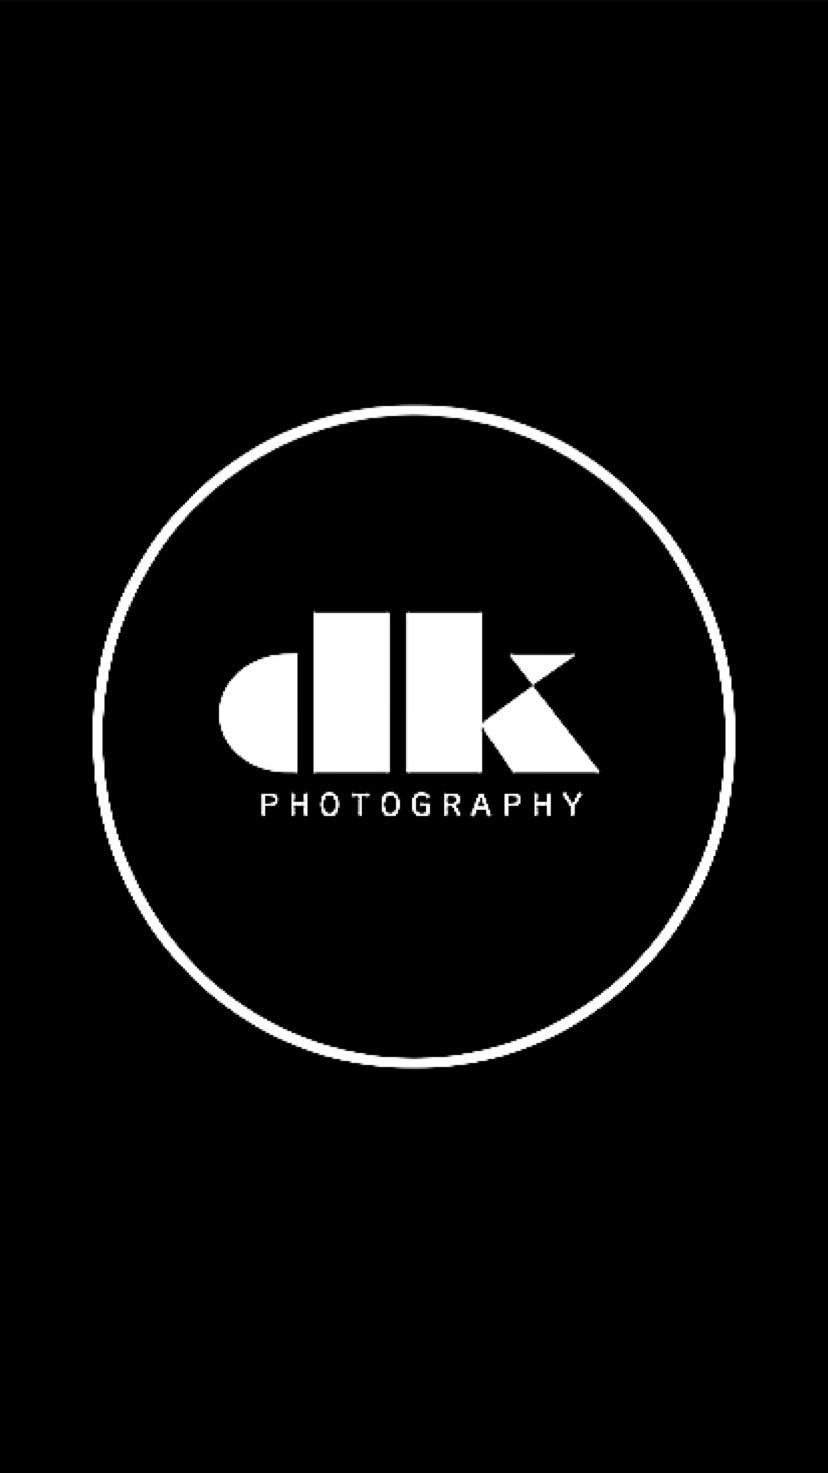 DavidKoungPhotography